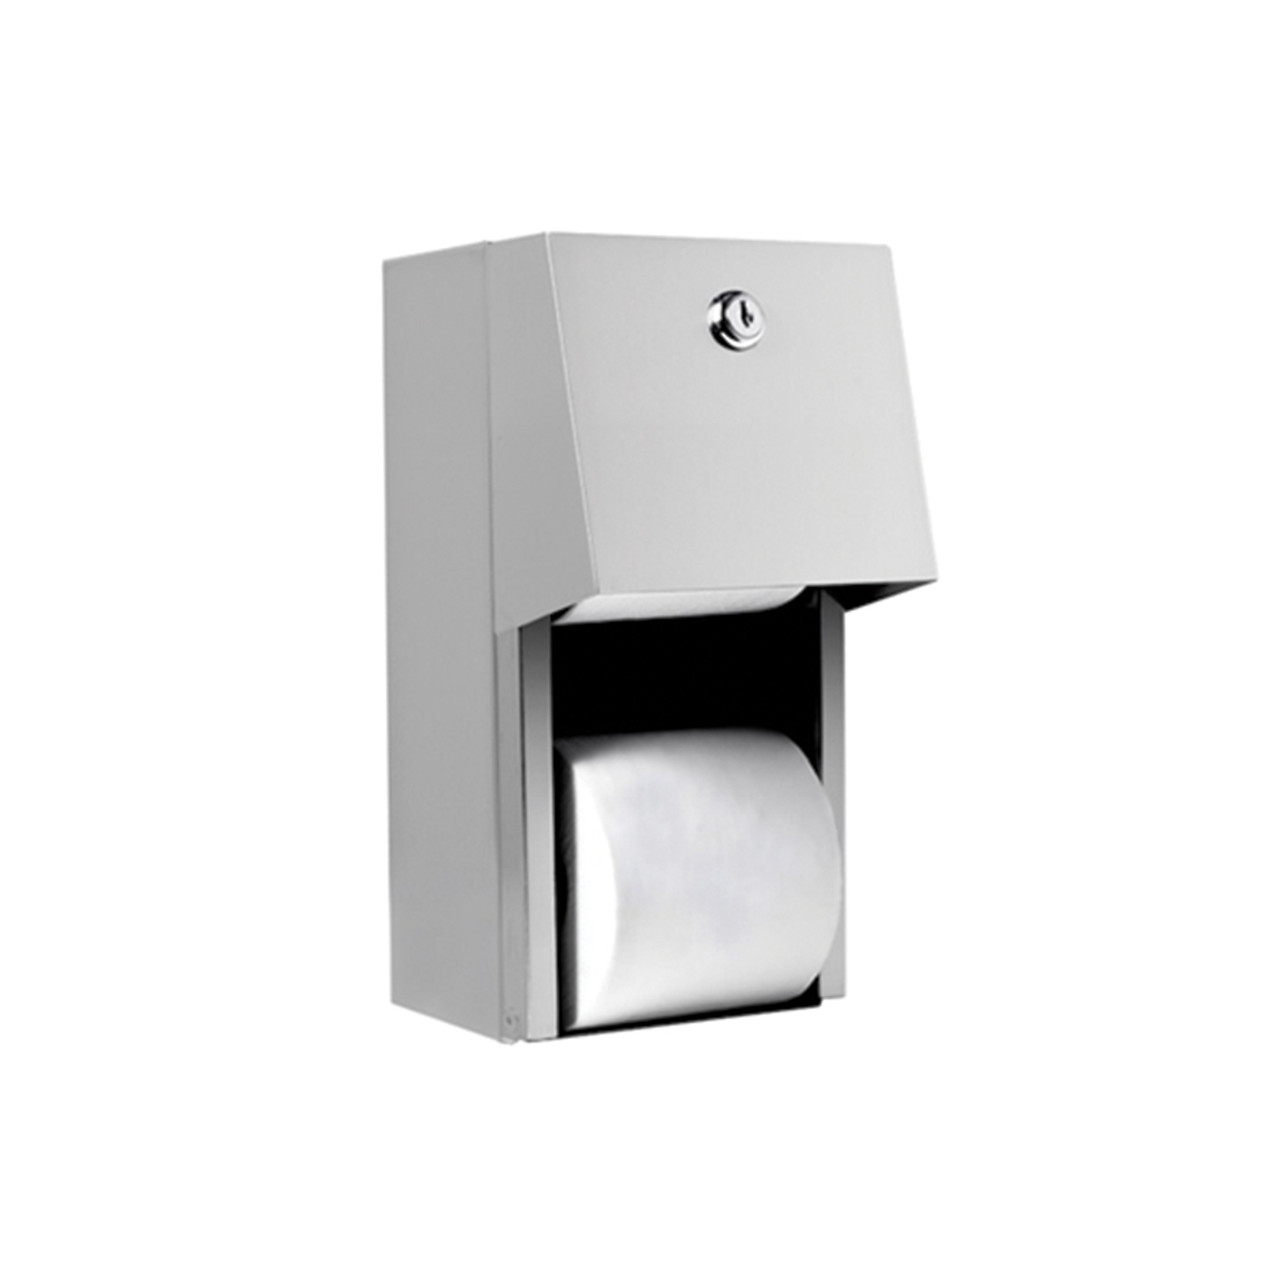 Double Roll Toilet Tissue Dispenser - Stainless Steel